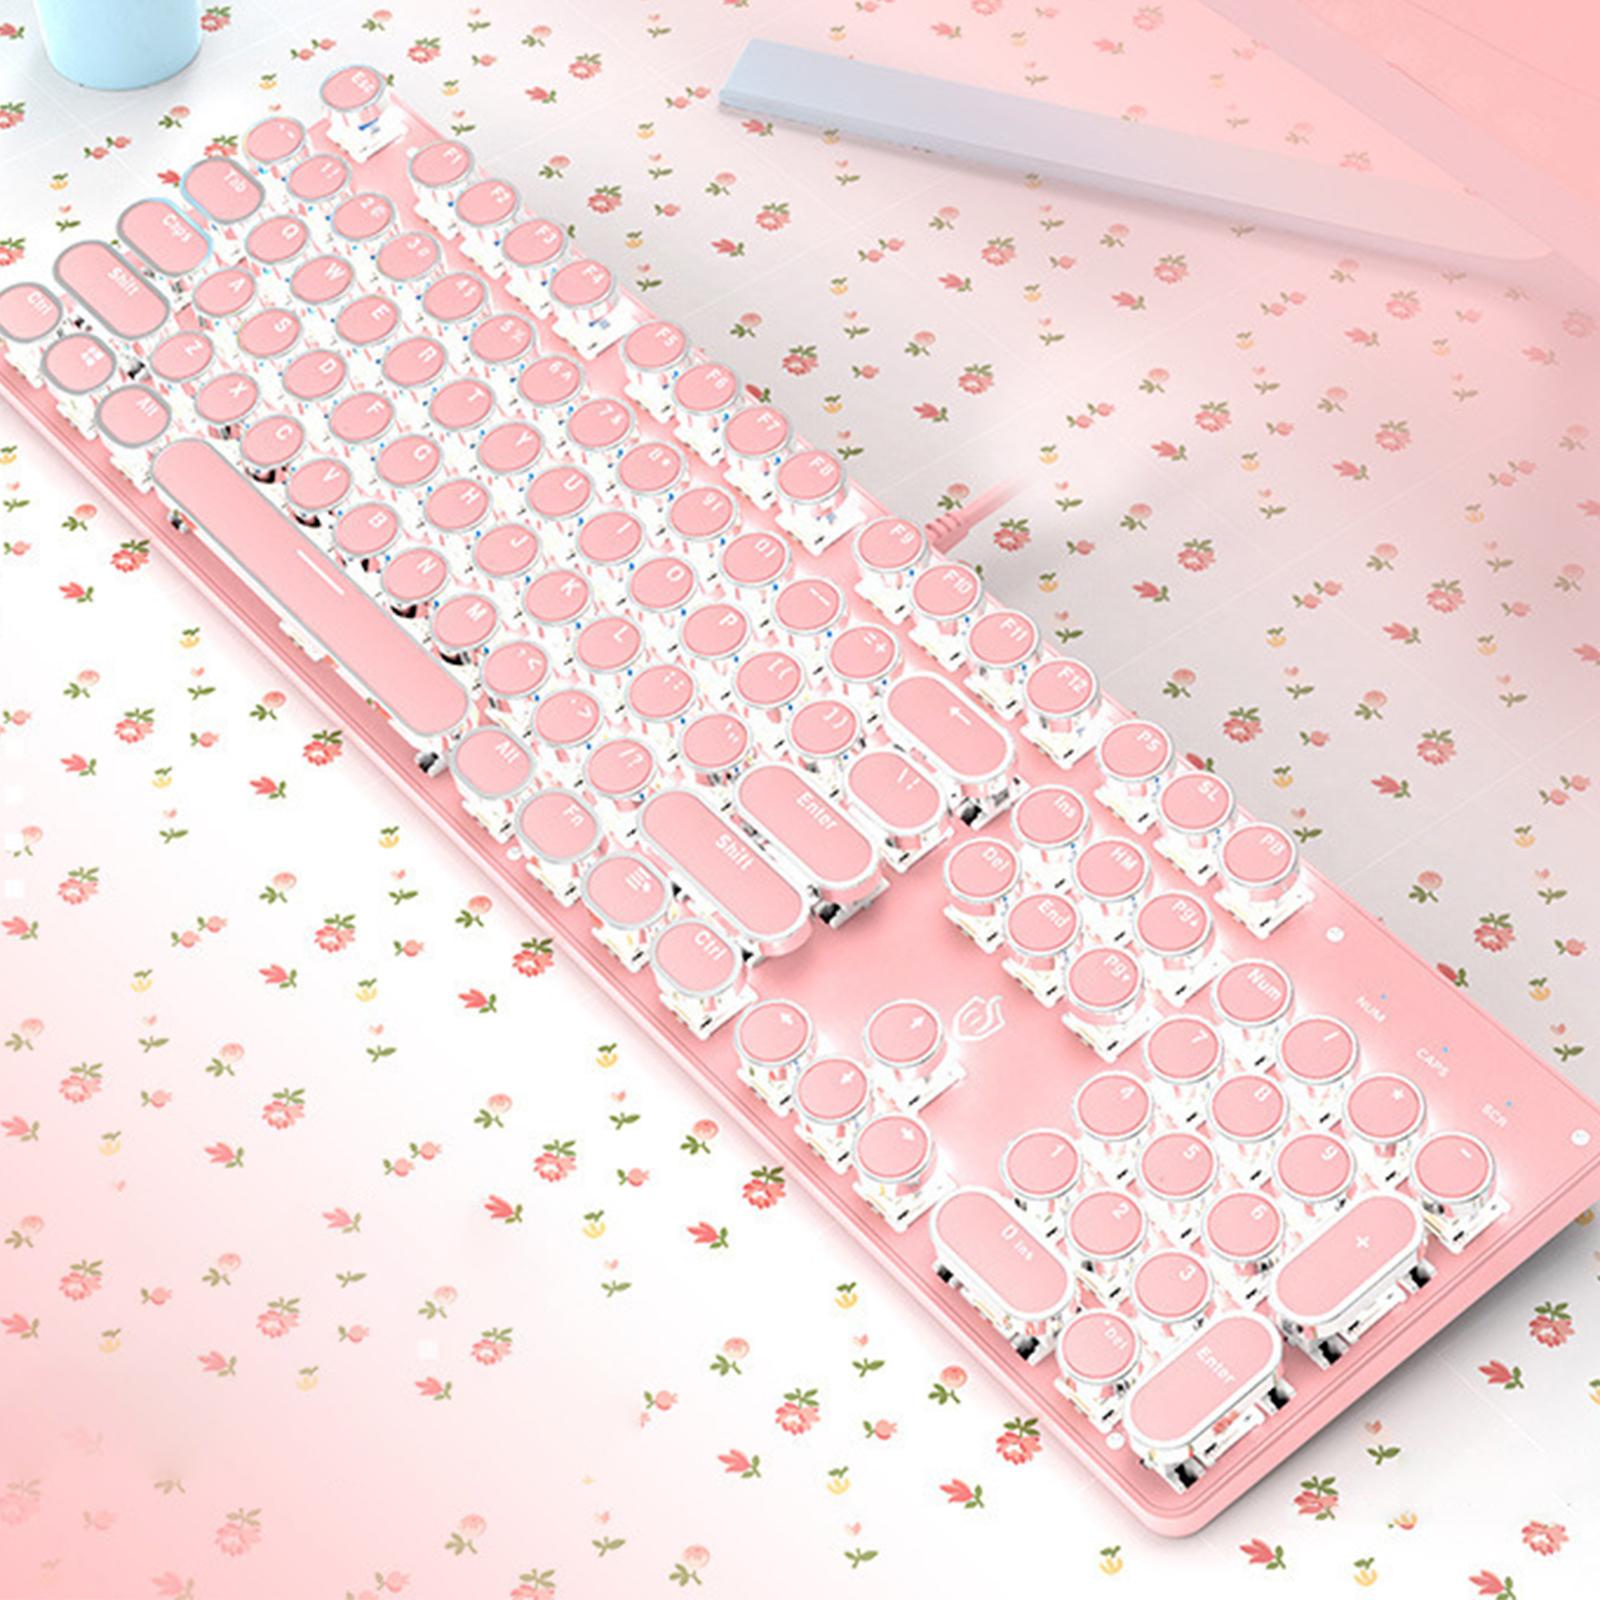 Wired Gaming Keyboard Ergonomic Pink Keyboard for Computer Gamer Round